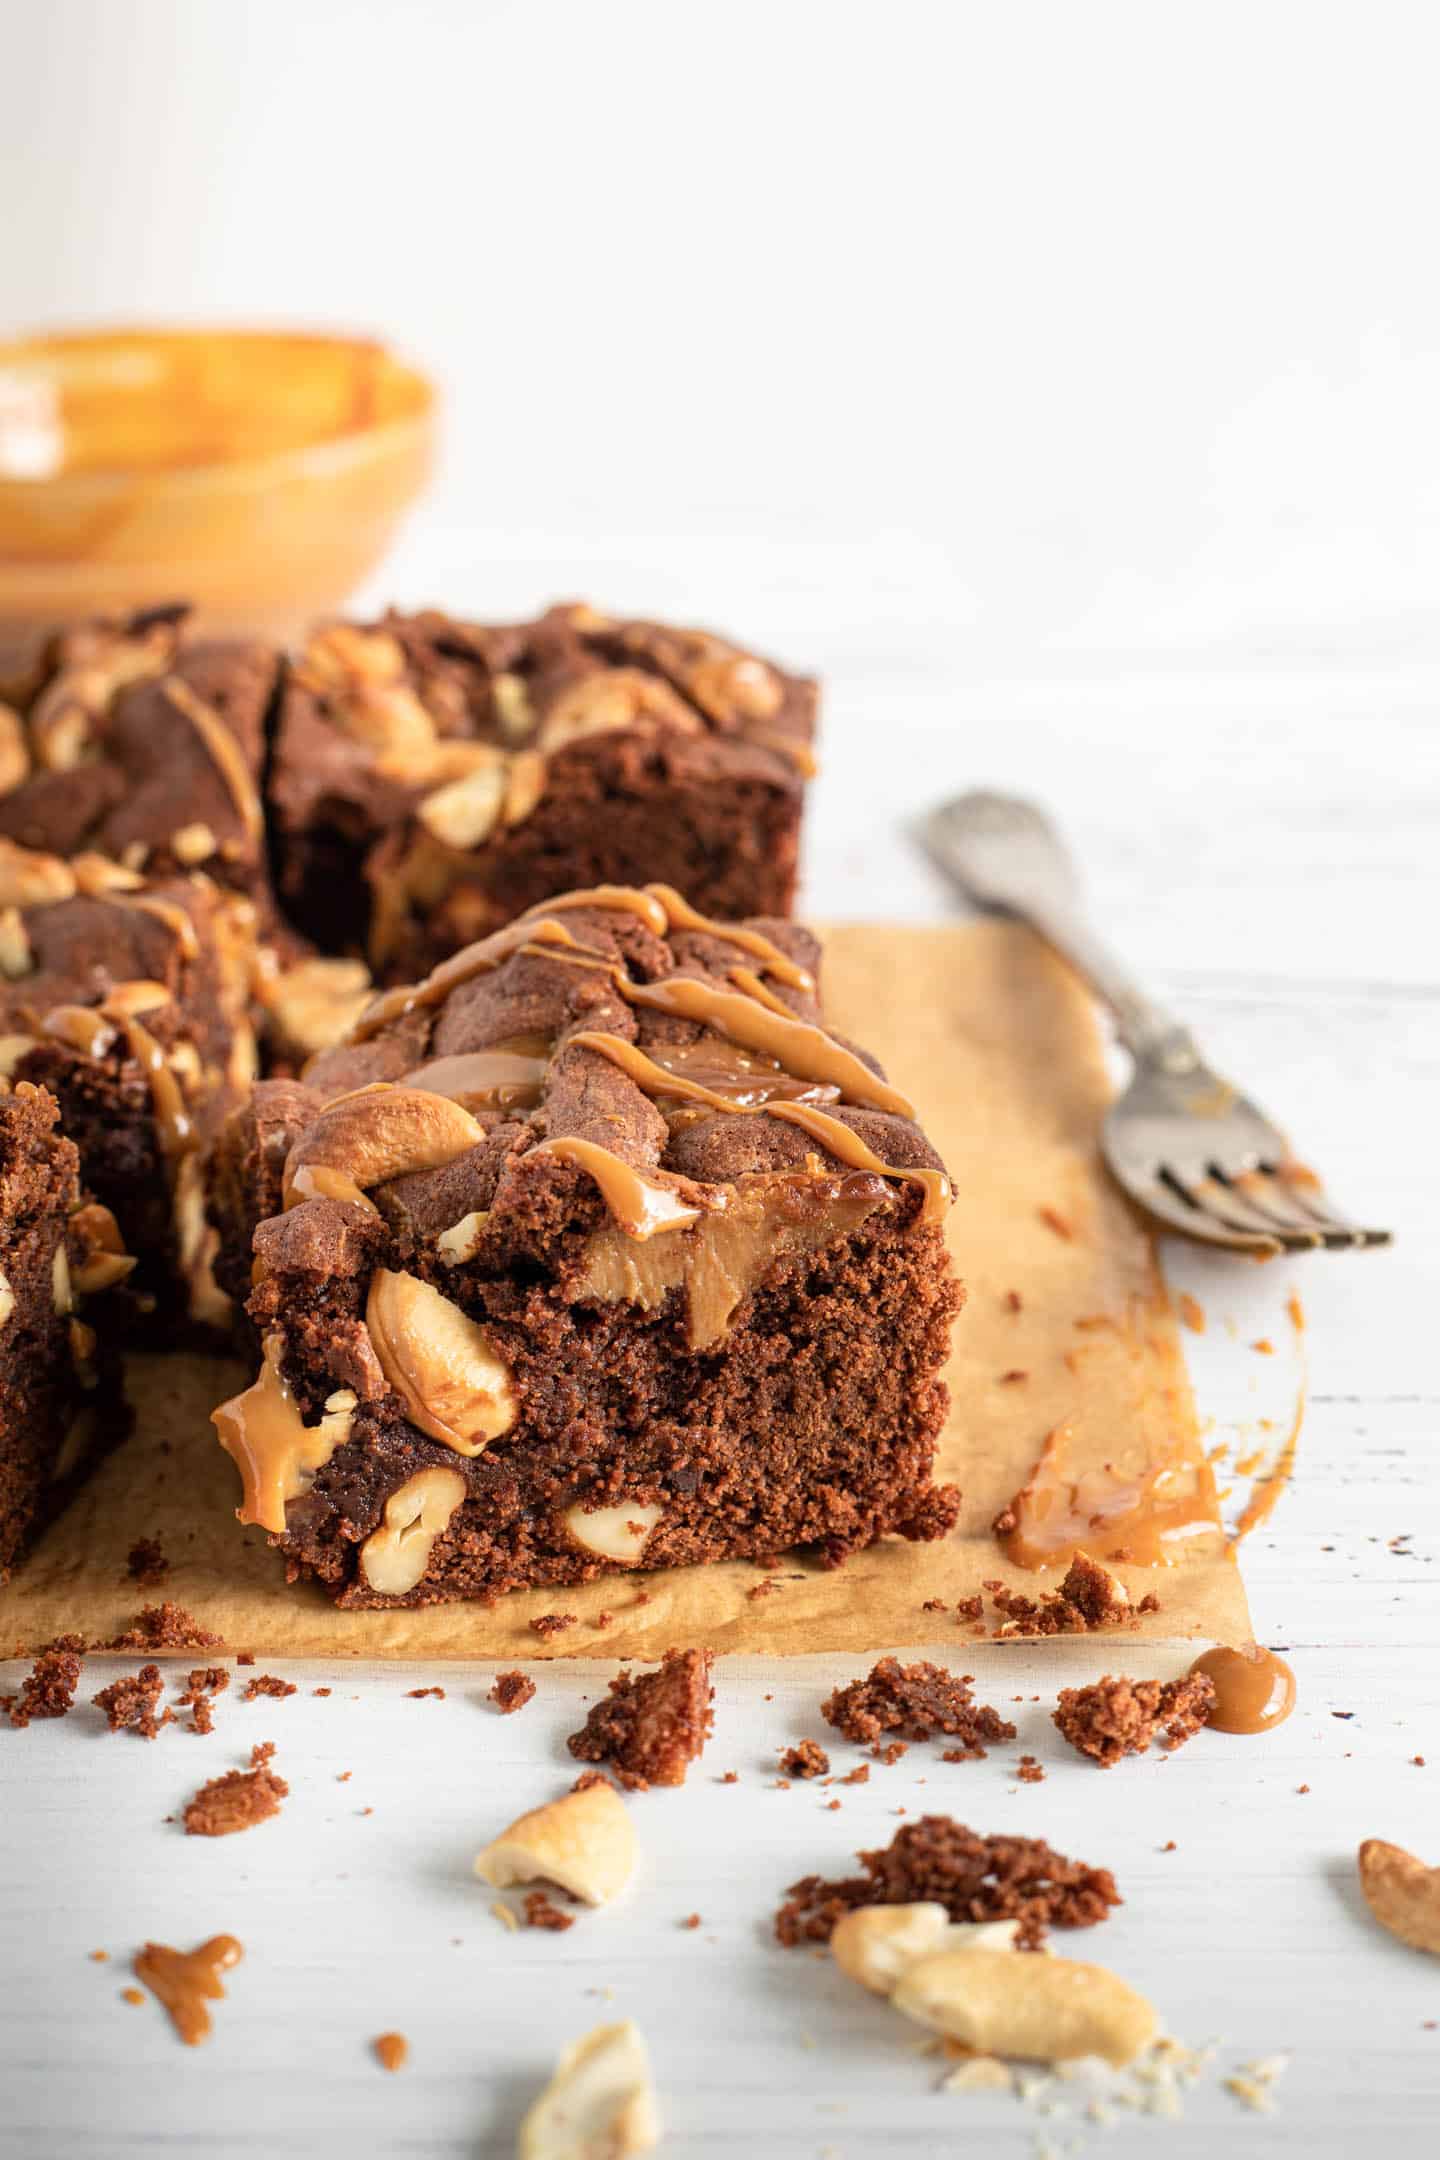 Cuadrado de brownie sobre papel manteca marrón, un tenedor y un bol con dulce de leche atrás